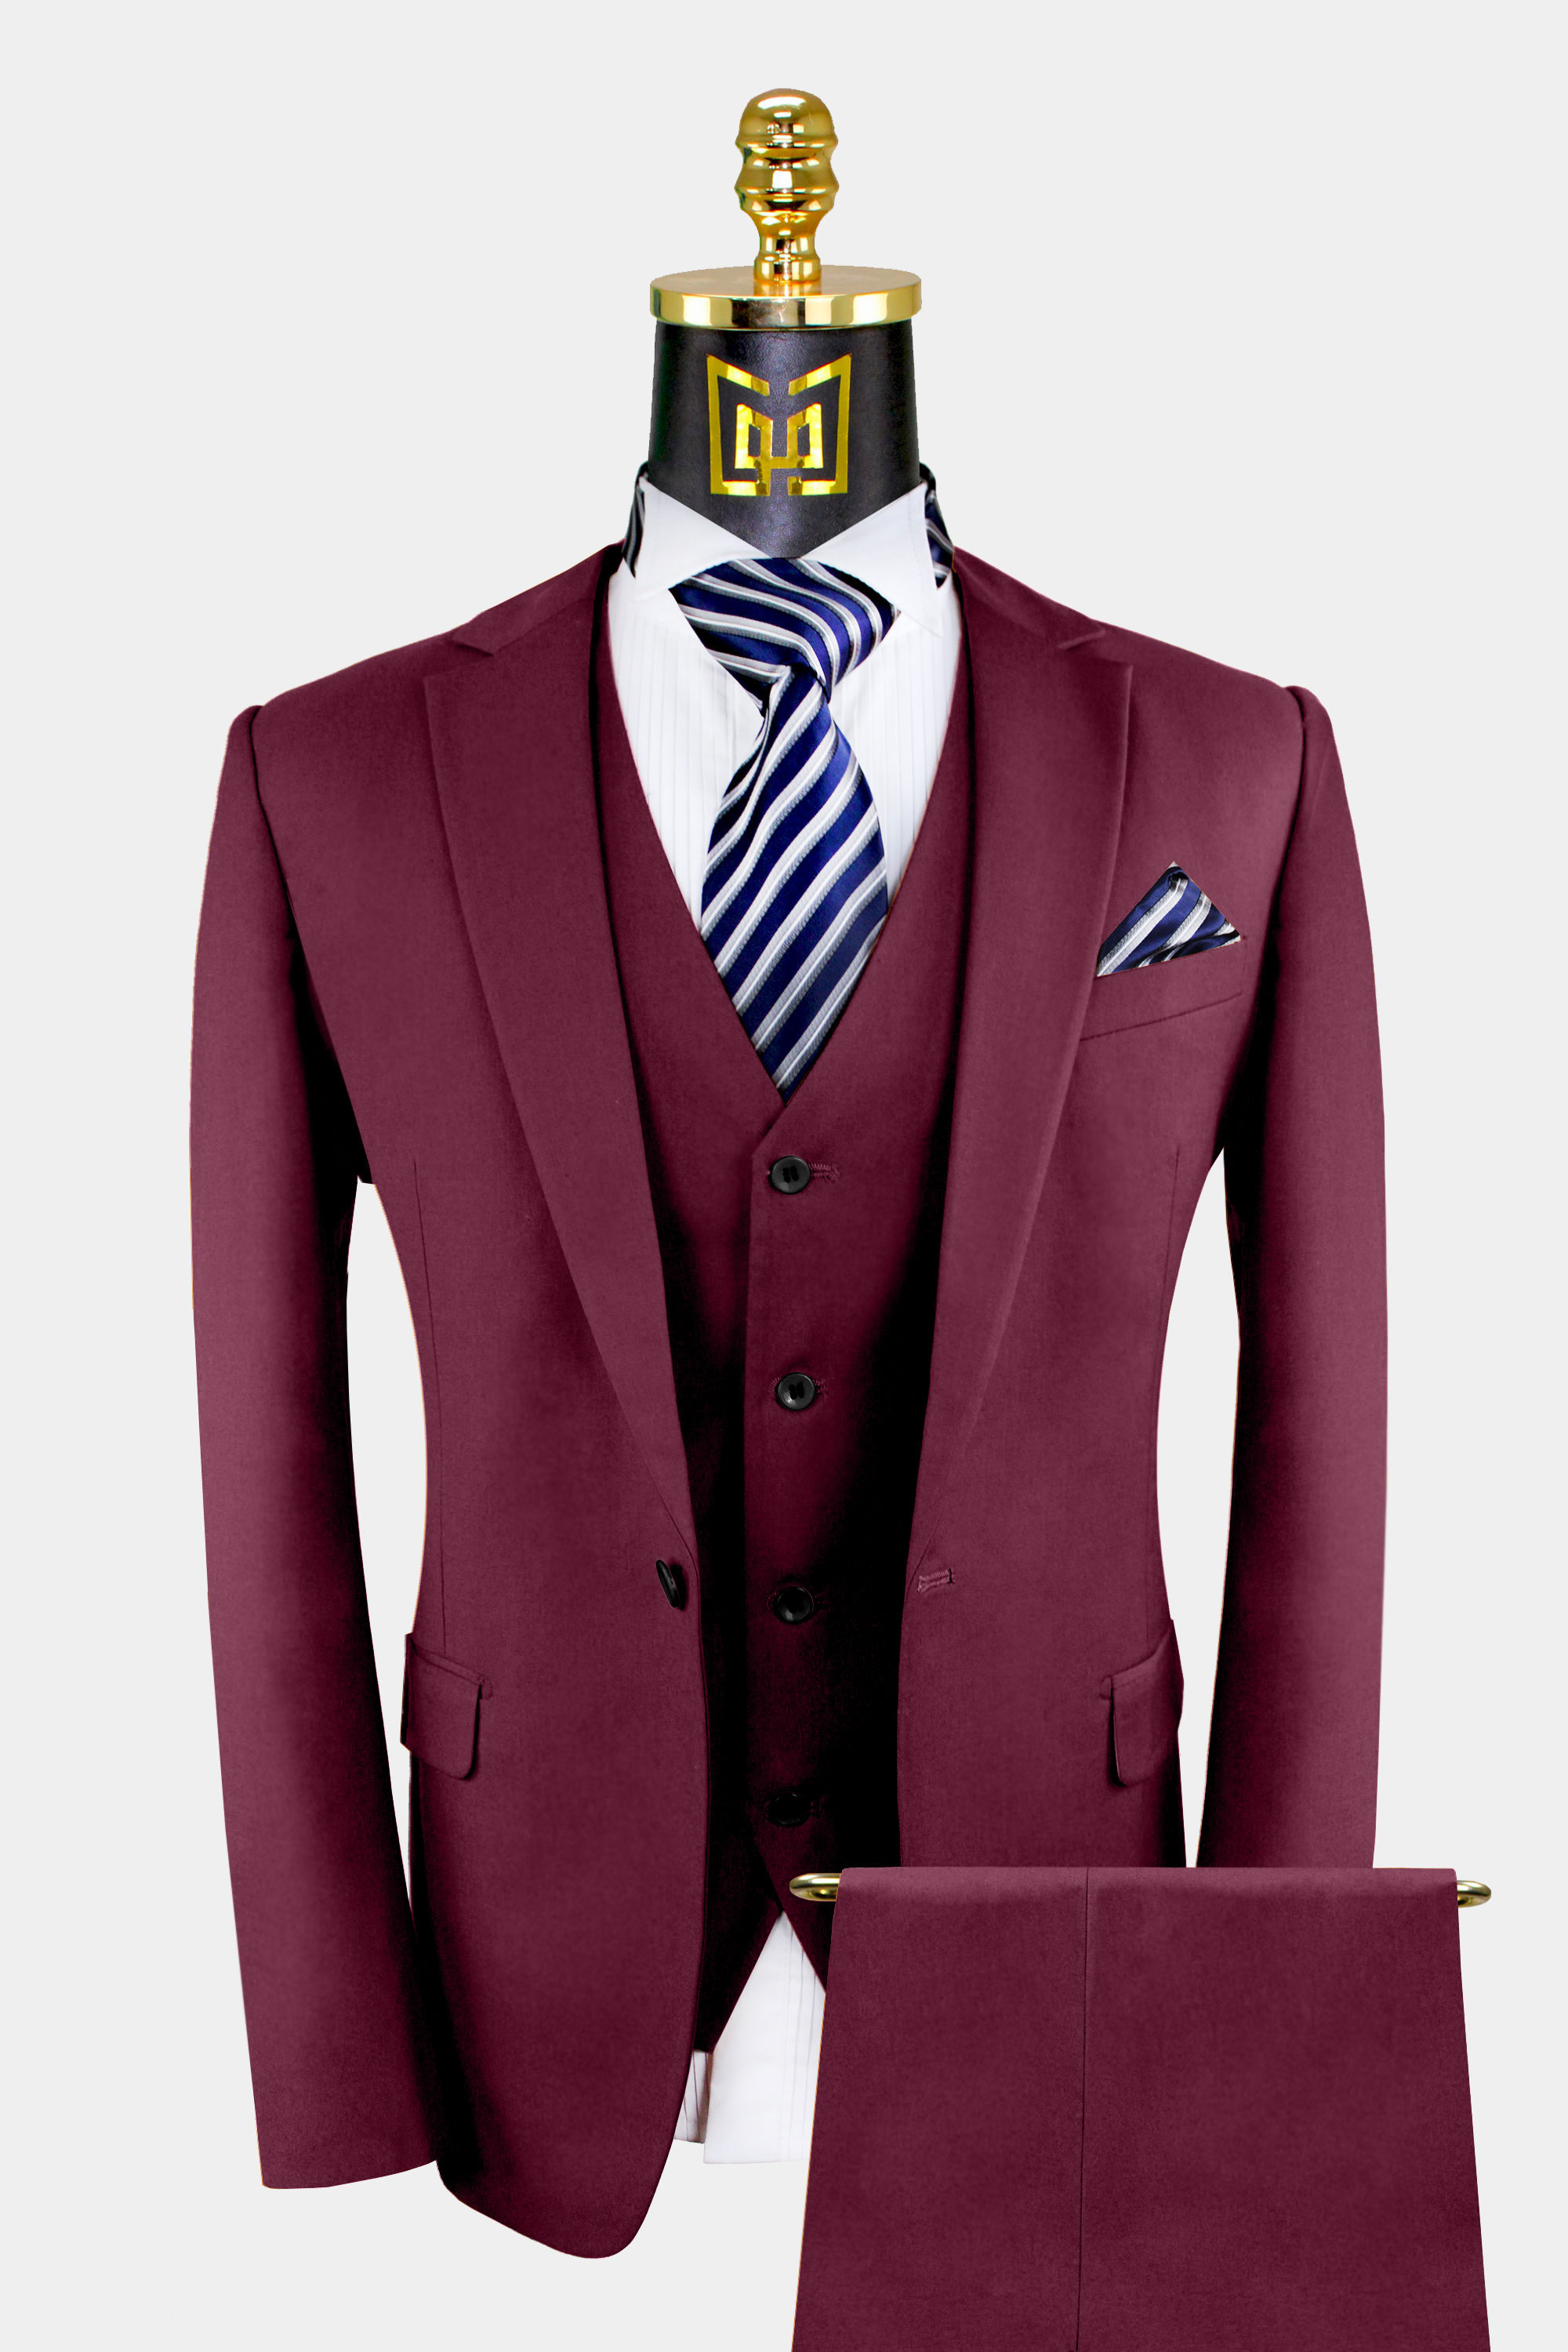 3-Piece-Burgundy-Suit-For-Men-Wedding-Groom-Prom-Suit-from-Gentlemansguru.com